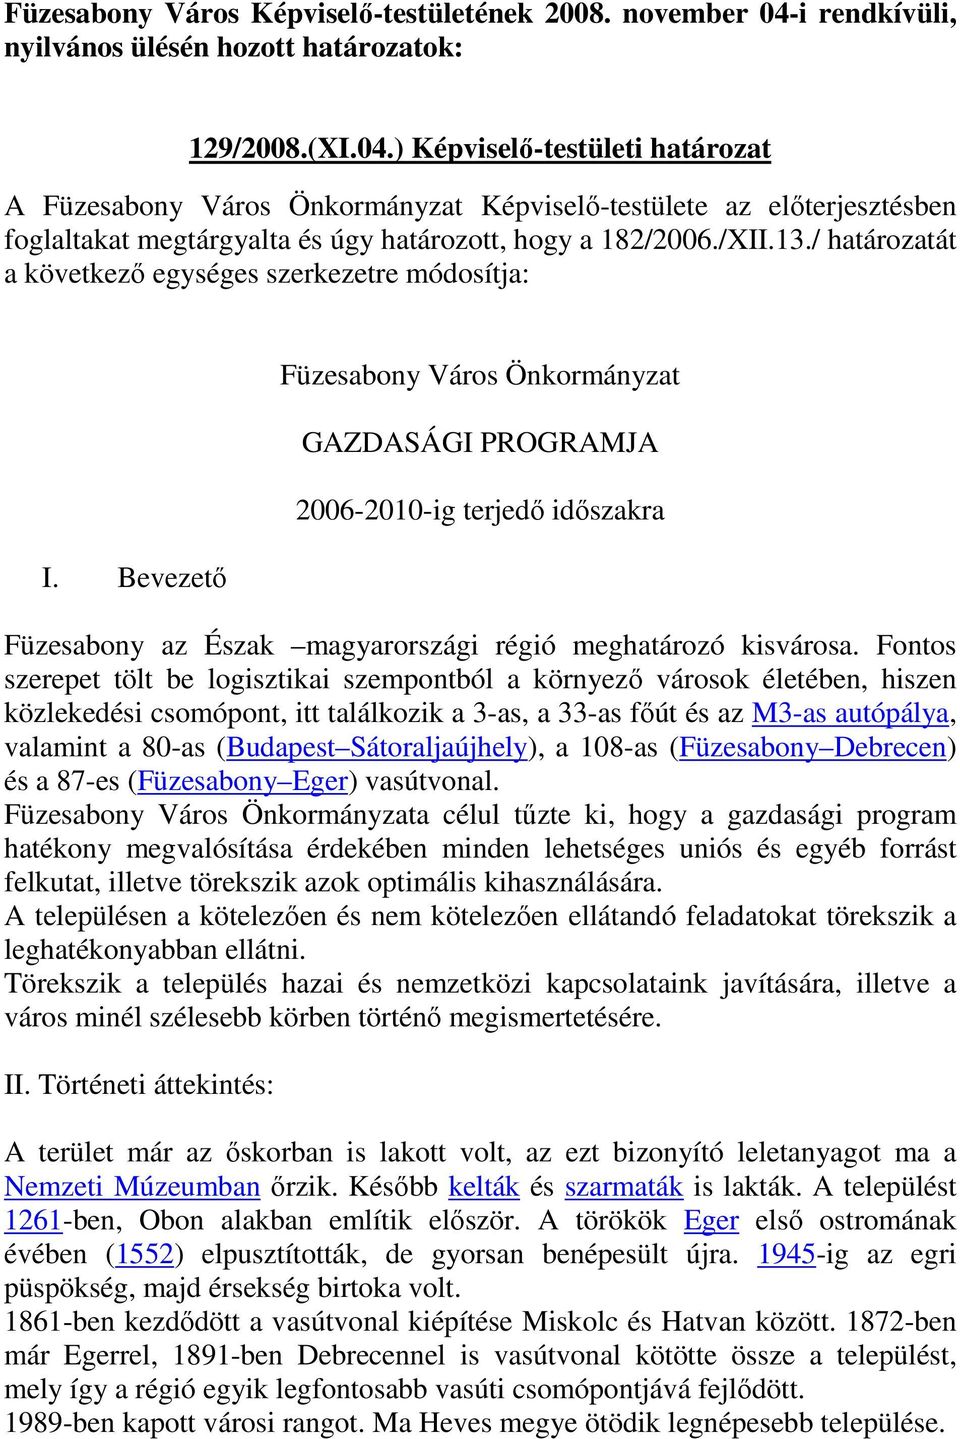 ) Képviselı-testületi határozat A Füzesabony Város Önkormányzat Képviselı-testülete az elıterjesztésben foglaltakat megtárgyalta és úgy határozott, hogy a 182/2006./XII.13.